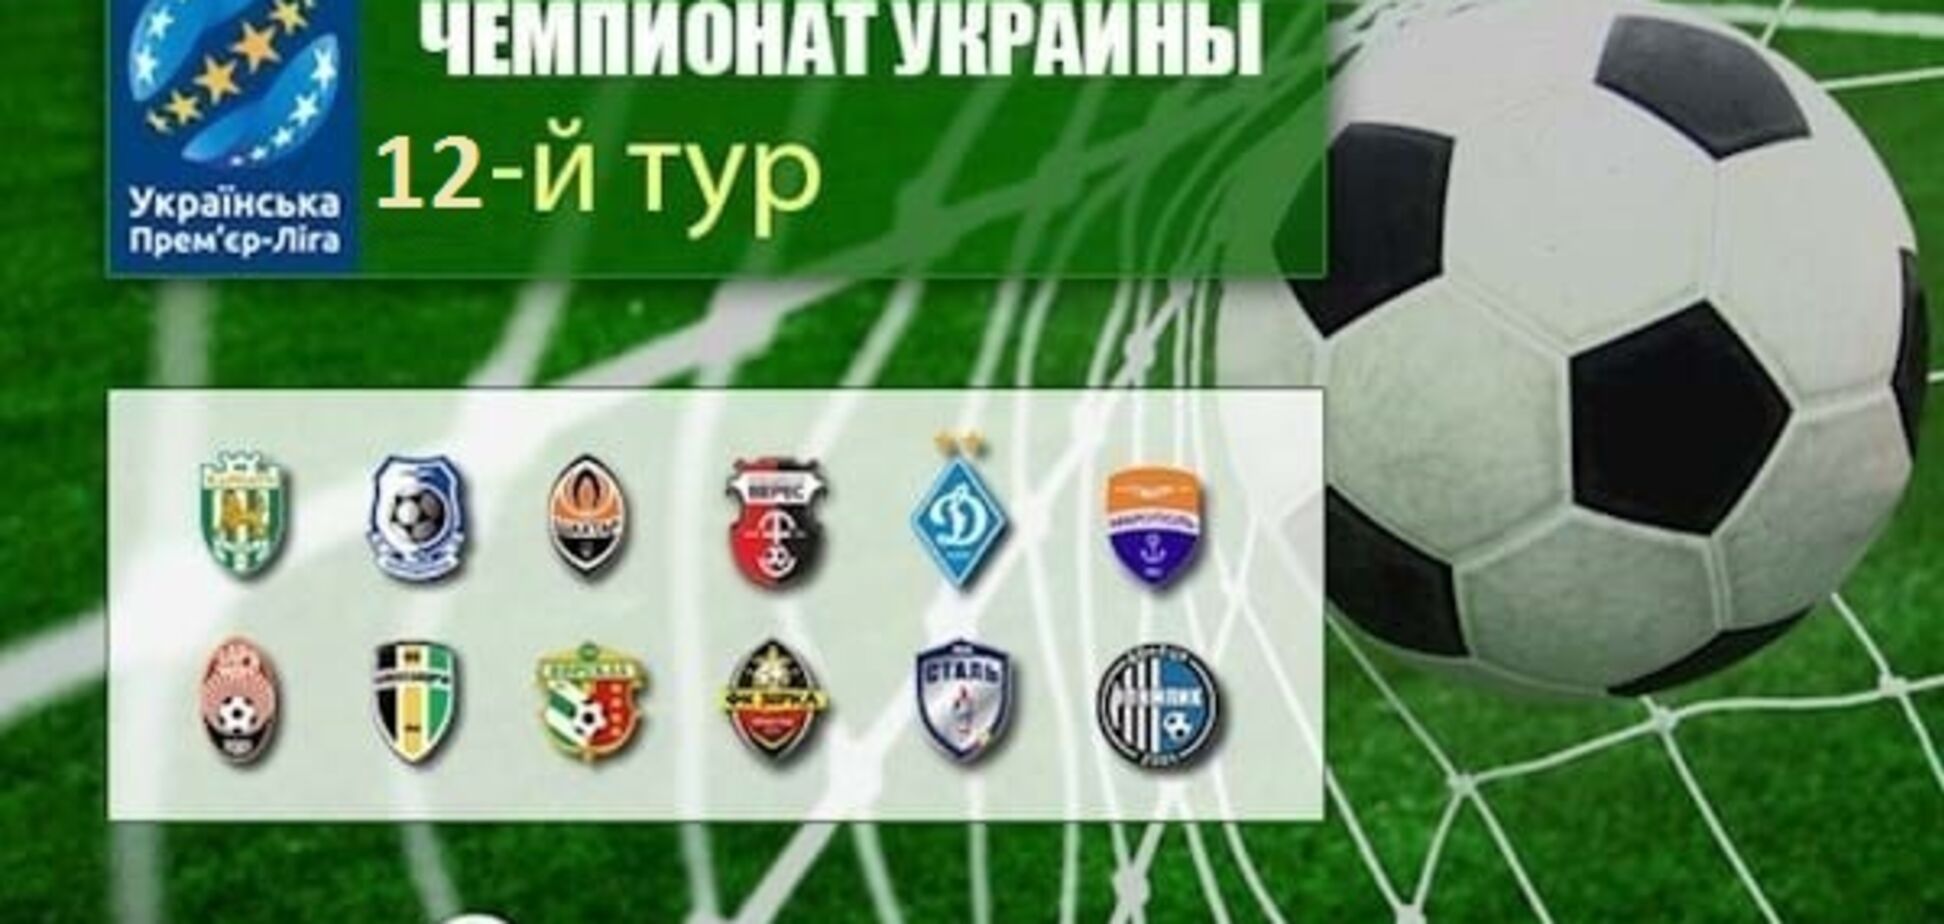 12-й тур чемпионата Украины по футболу: результаты, обзоры, турнирная таблица